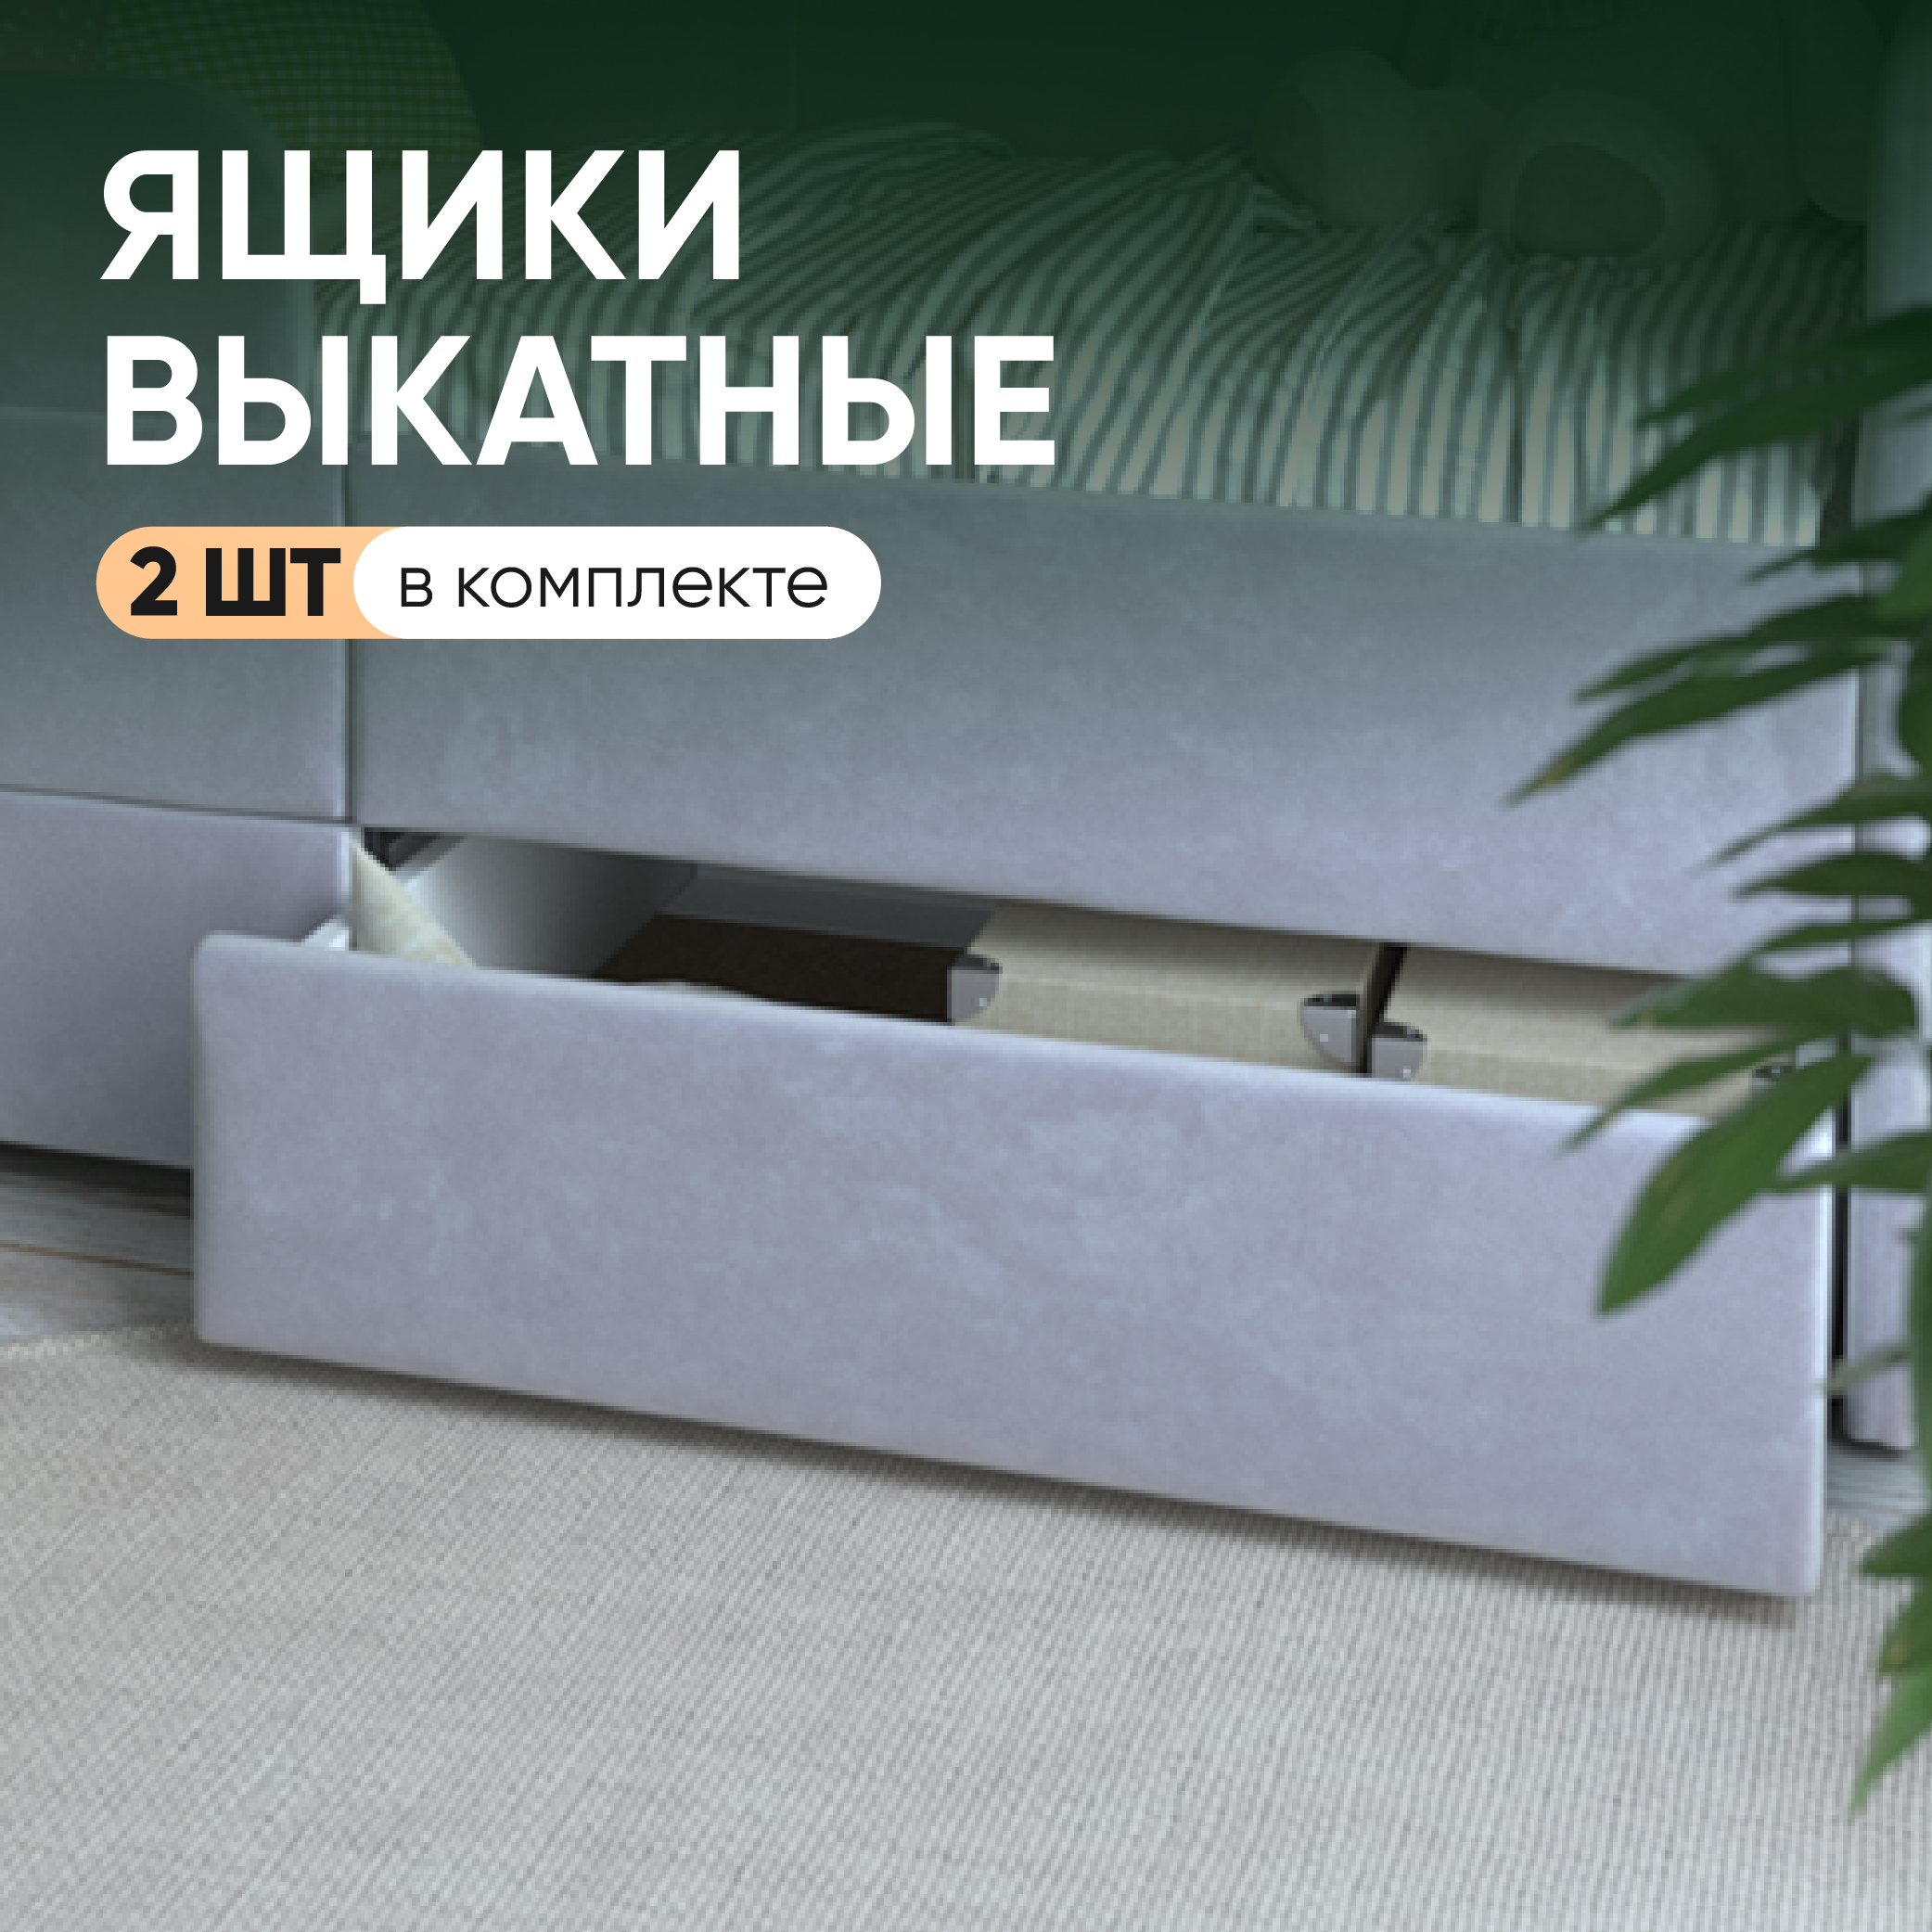 Выкатные ящики SleepAngel для детской кровати-дивана Smile, серый, 2 шт, 140х70 см